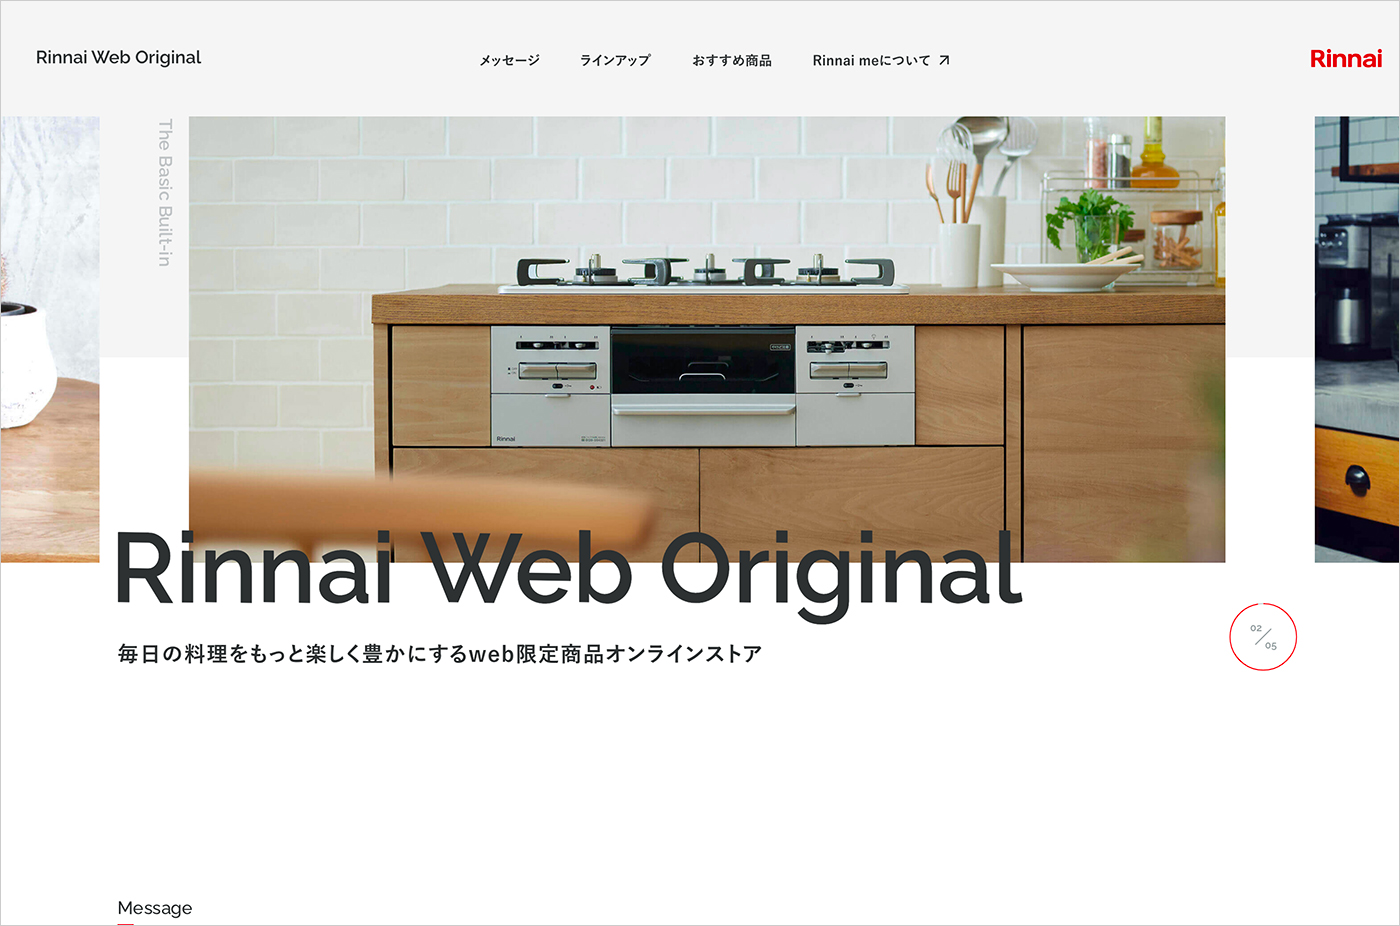 Rinnai Web Original 毎日の料理をもっと楽しく豊かにするウェブサイトの画面キャプチャ画像